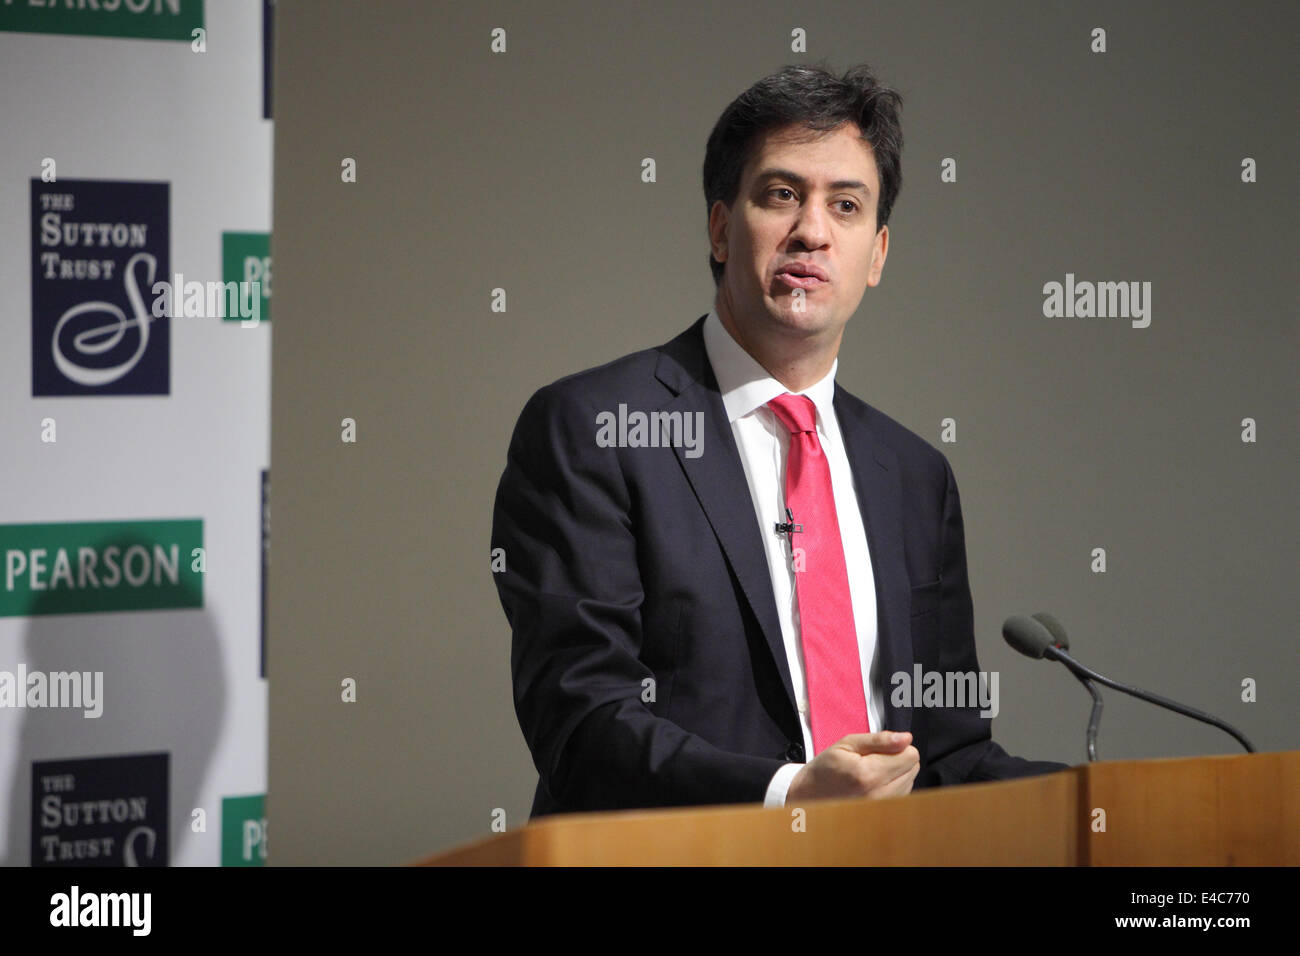 London, UK. 8. Juli 2014. Rt Hon Ed Miliband MP sprechen auf dem Pearson/Sutton Trust höhere Ambitionen Gipfel in London. Bildnachweis: Zute Lightfoot/Alamy Live-Nachrichten Stockfoto